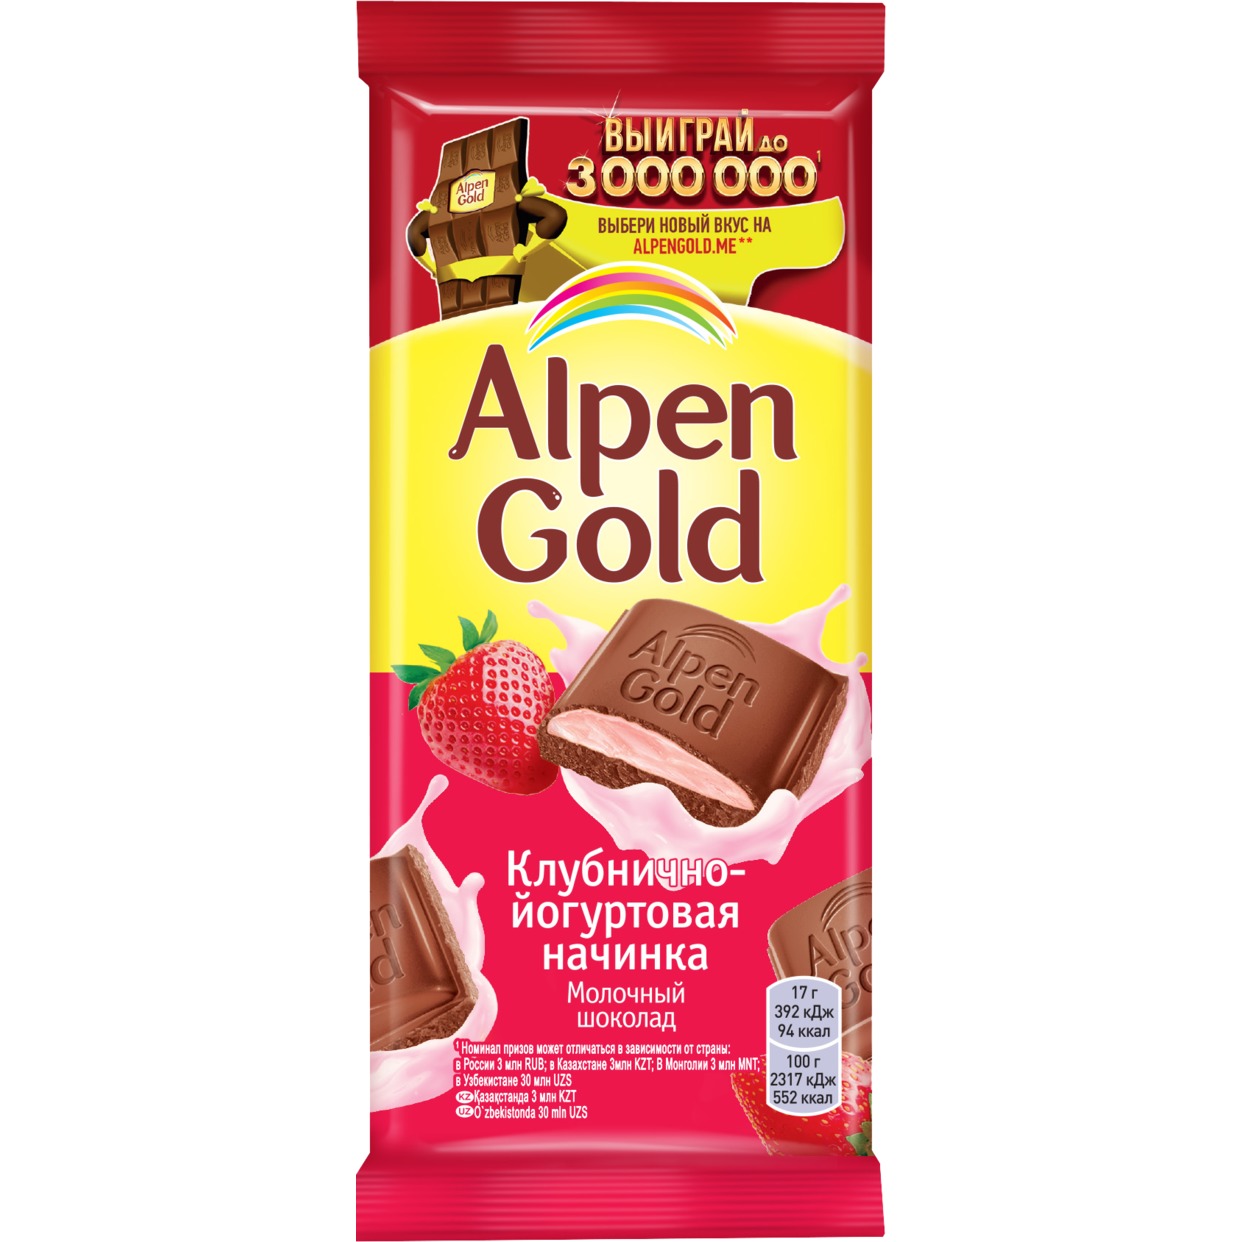 Шоколад молочный Alpen Gold Альпен Гольд с клубнично-йогуртовой начинкой, 85г по акции в Пятерочке